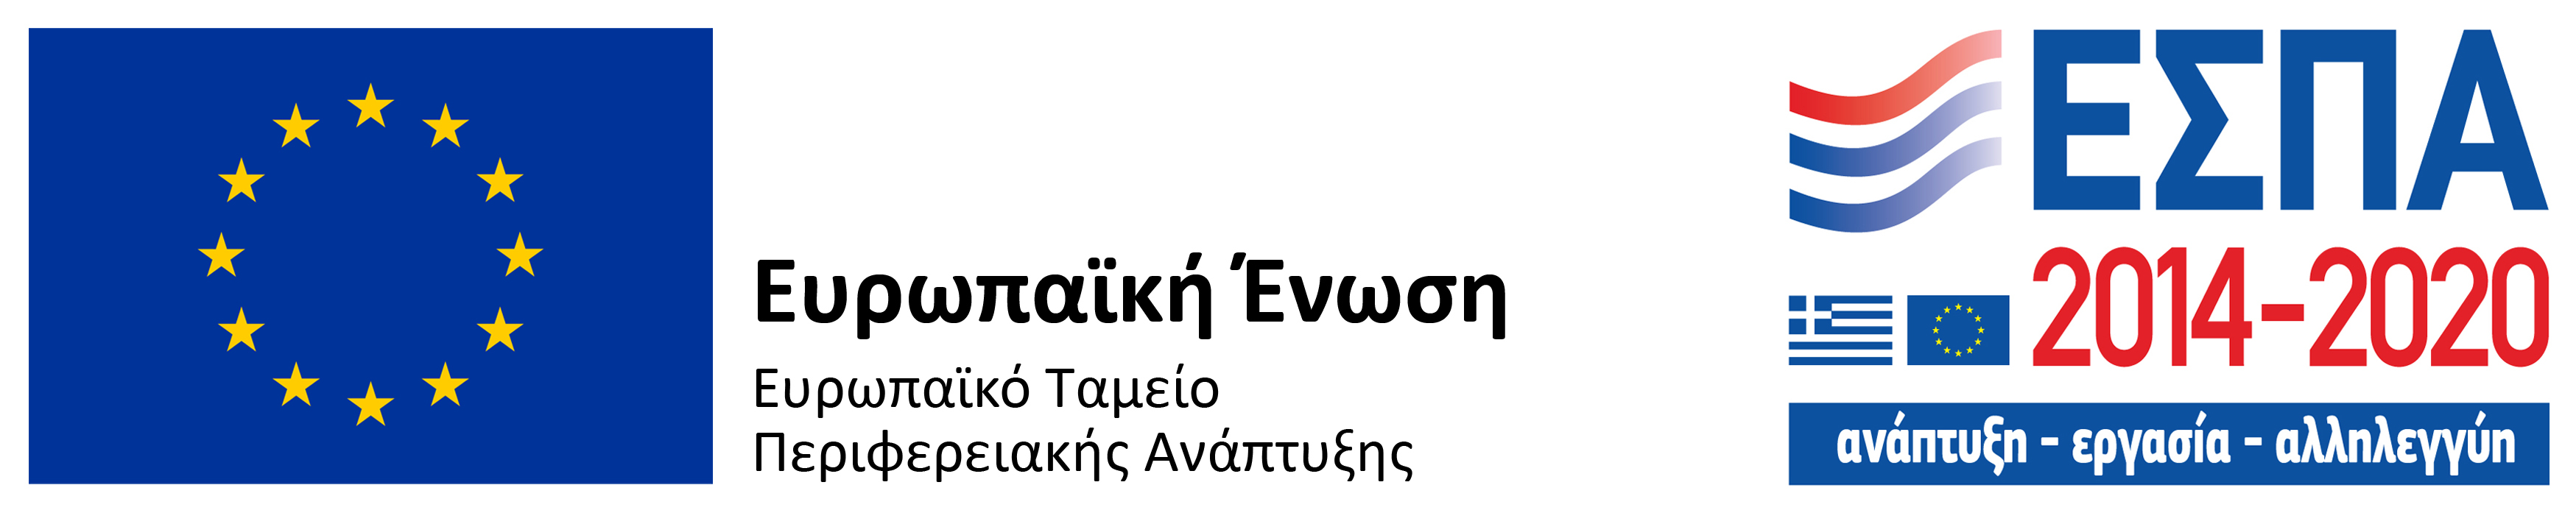 espa banner greek pdf